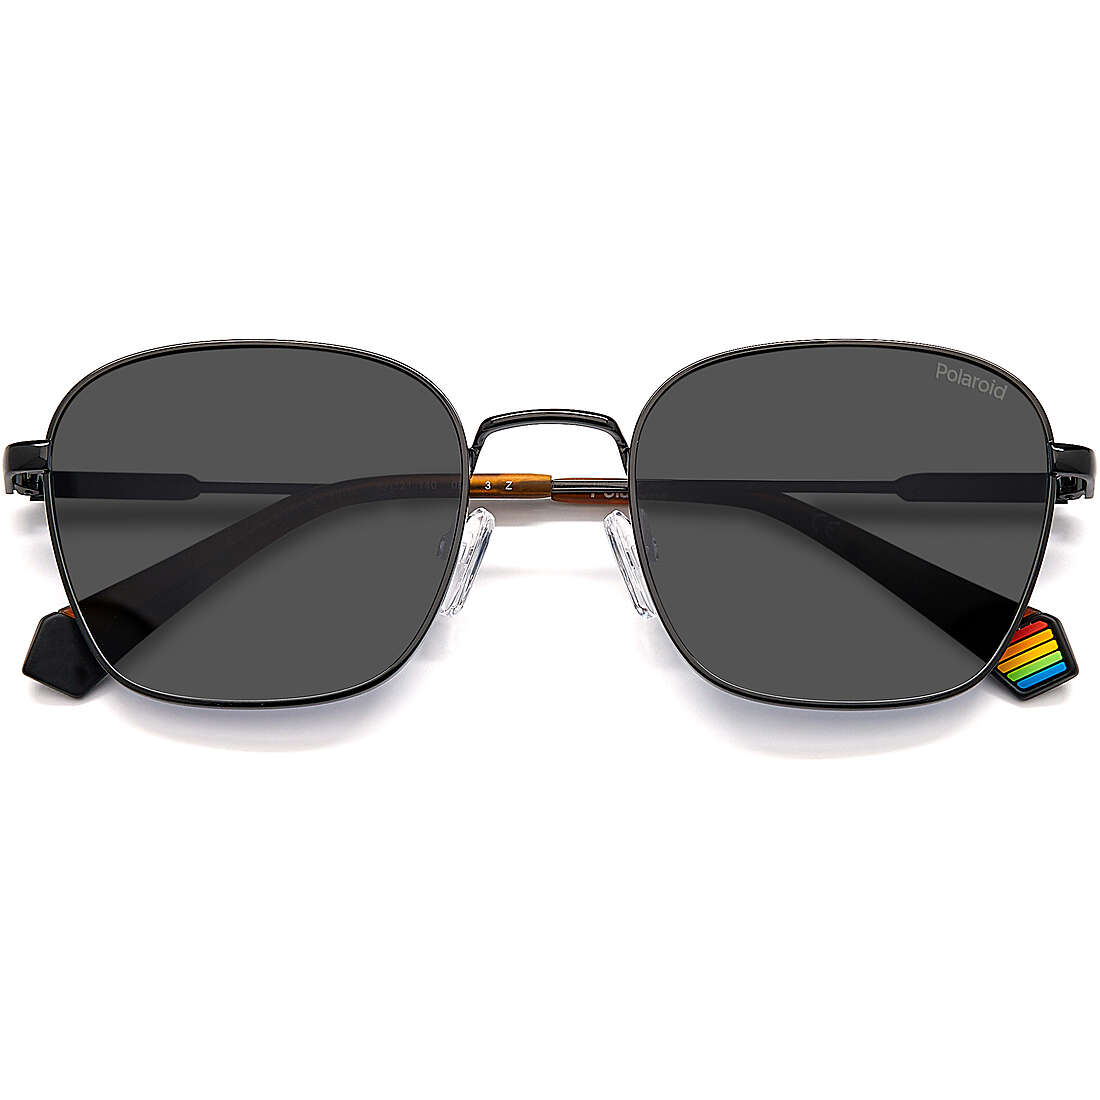 occhiali da sole Polaroid neri forma Esagonale 20480980753M9